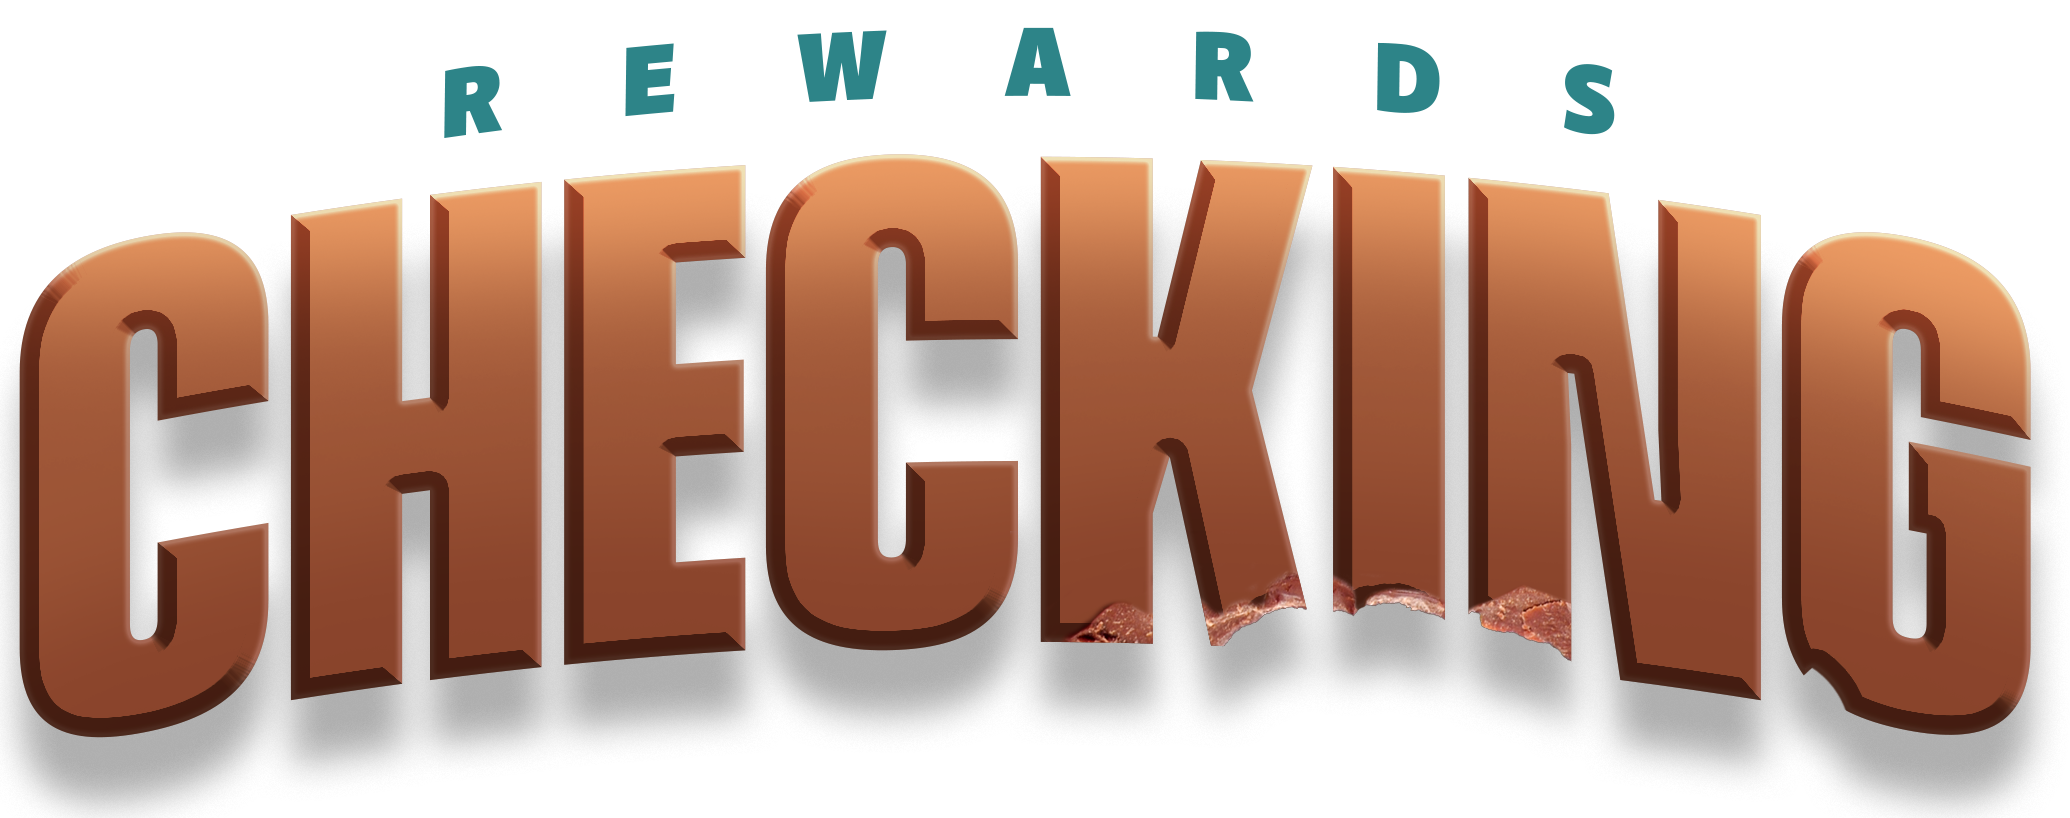 rewards checking logo